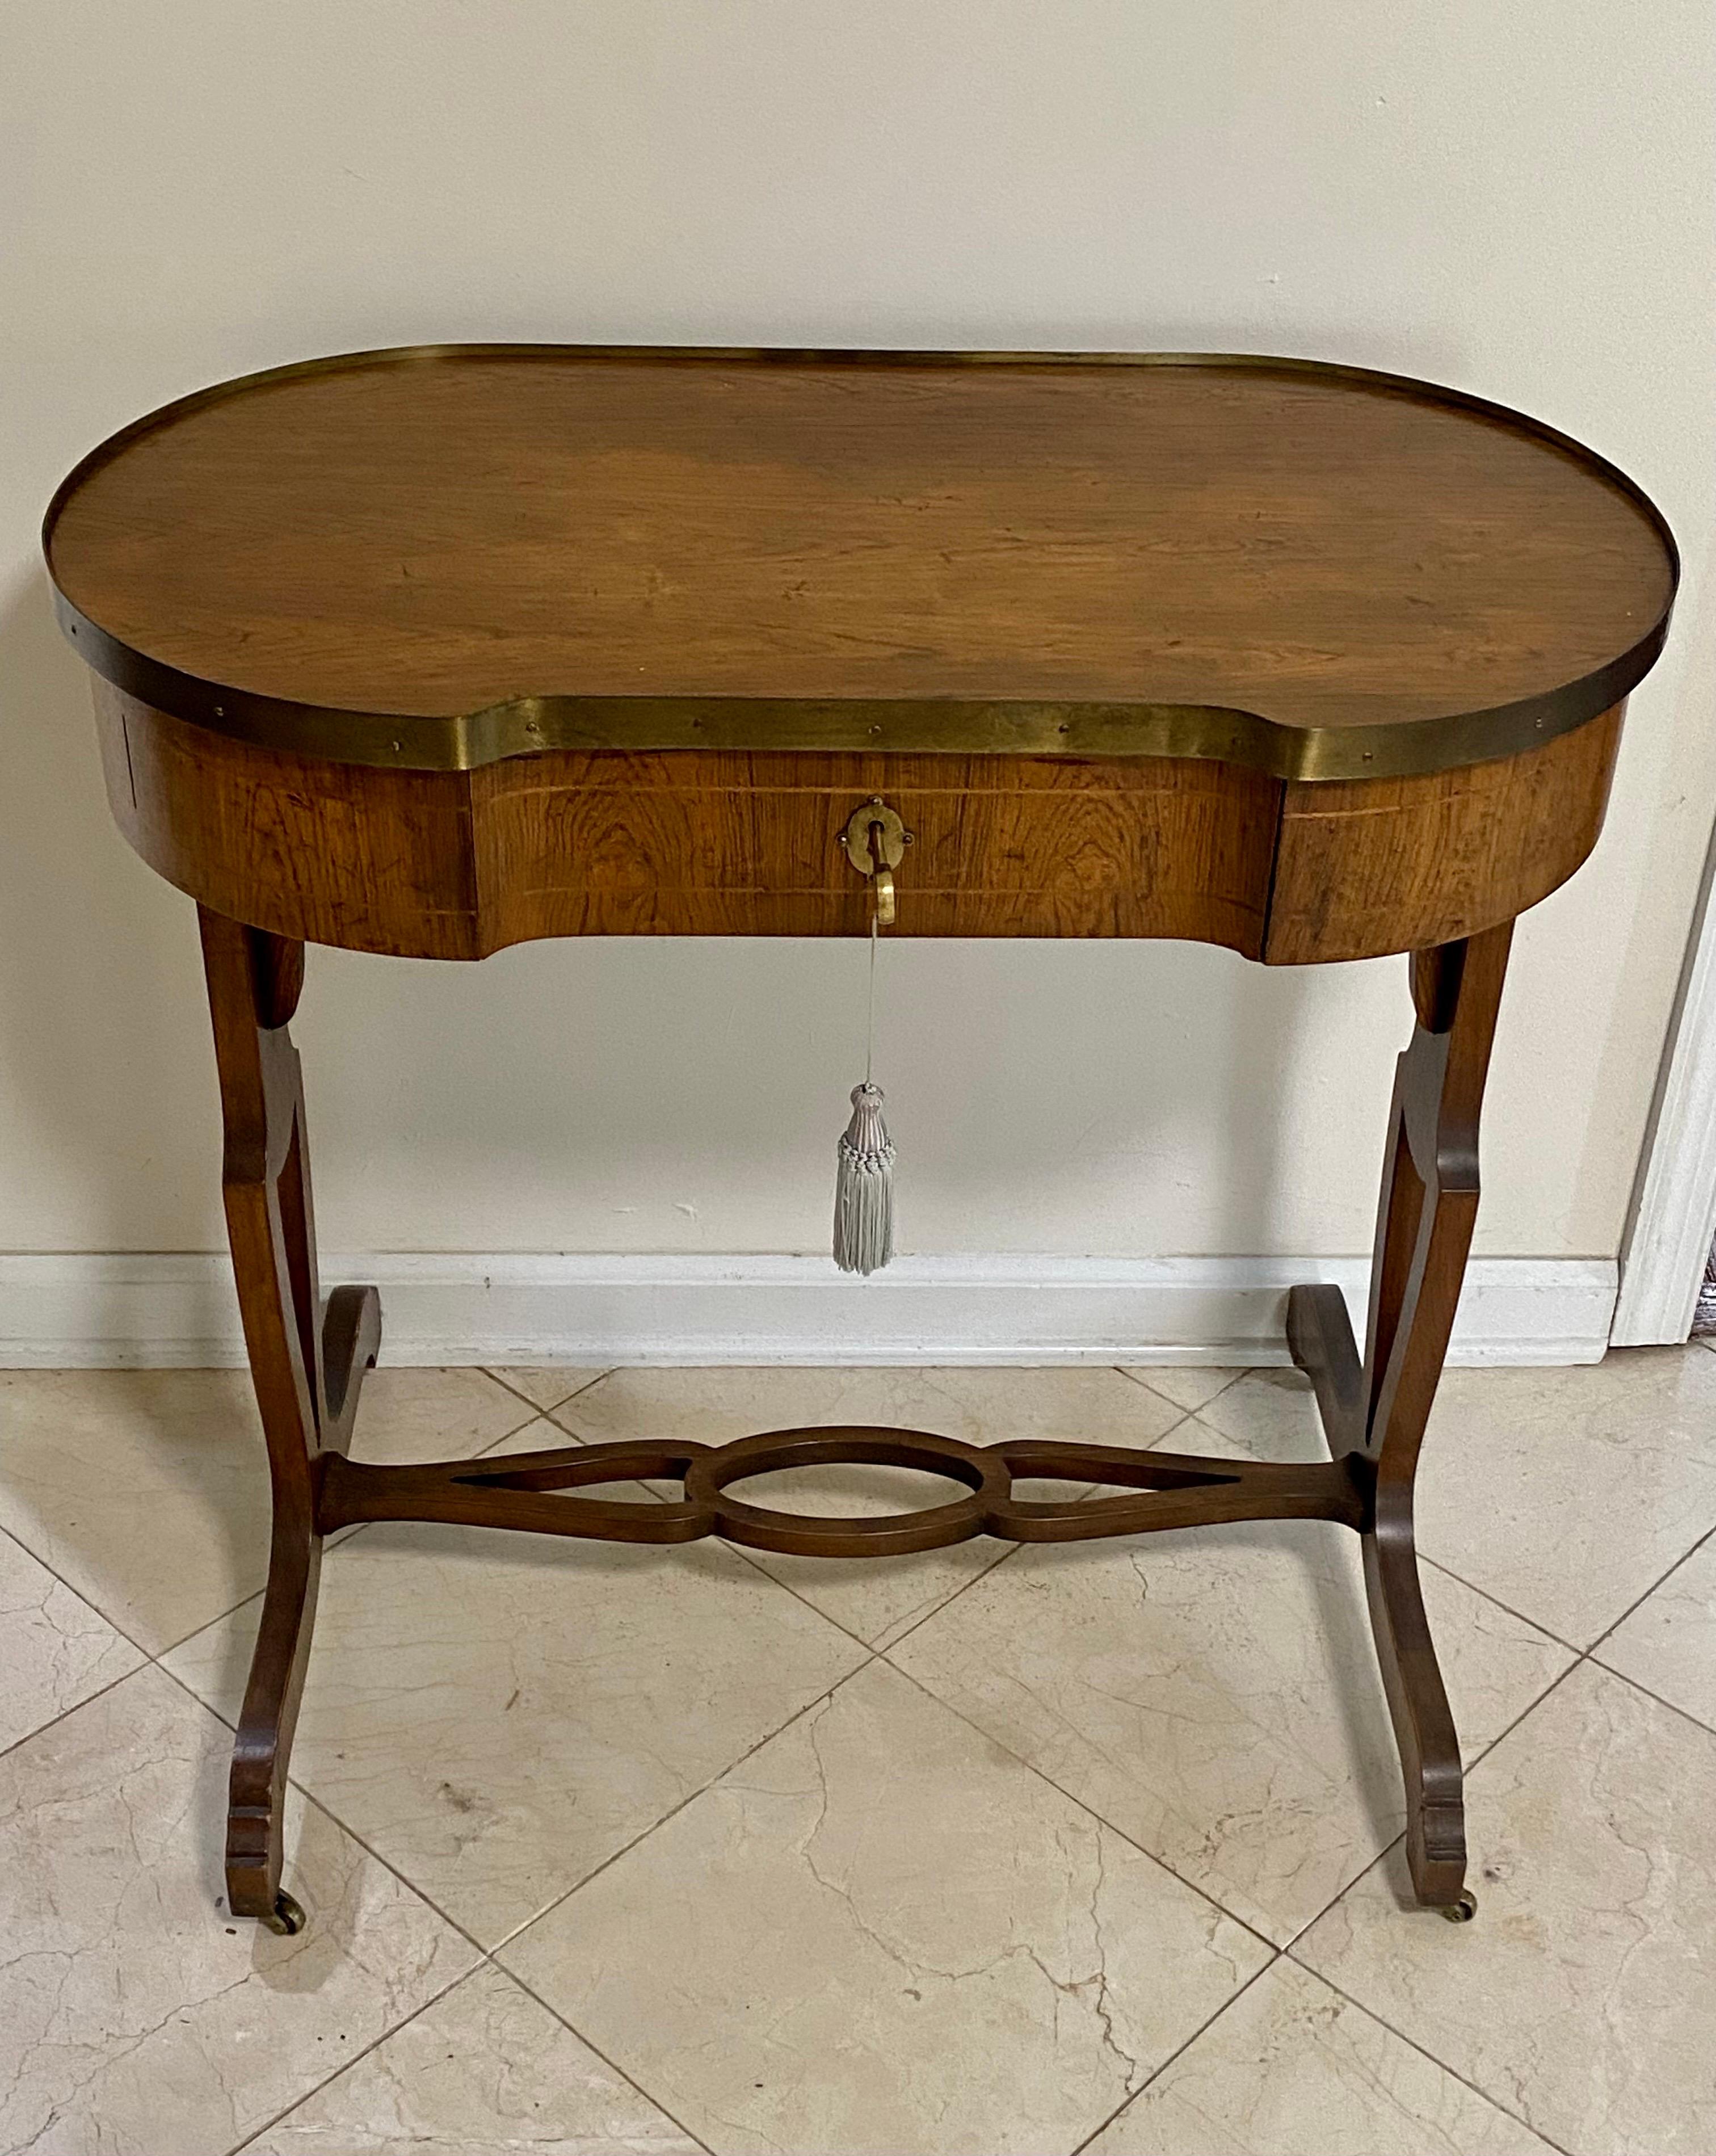 Neoklassischer Palisander-Schreibtisch von Baker, gekauft 1969 bei Baker-Furniture in NYC. Es ist eines der Stücke, die Baker für seine Manor House-Linie von englischen Möbeln im Stil des achtzehnten Jahrhunderts ausgewählt hat. Länglicher Korpus